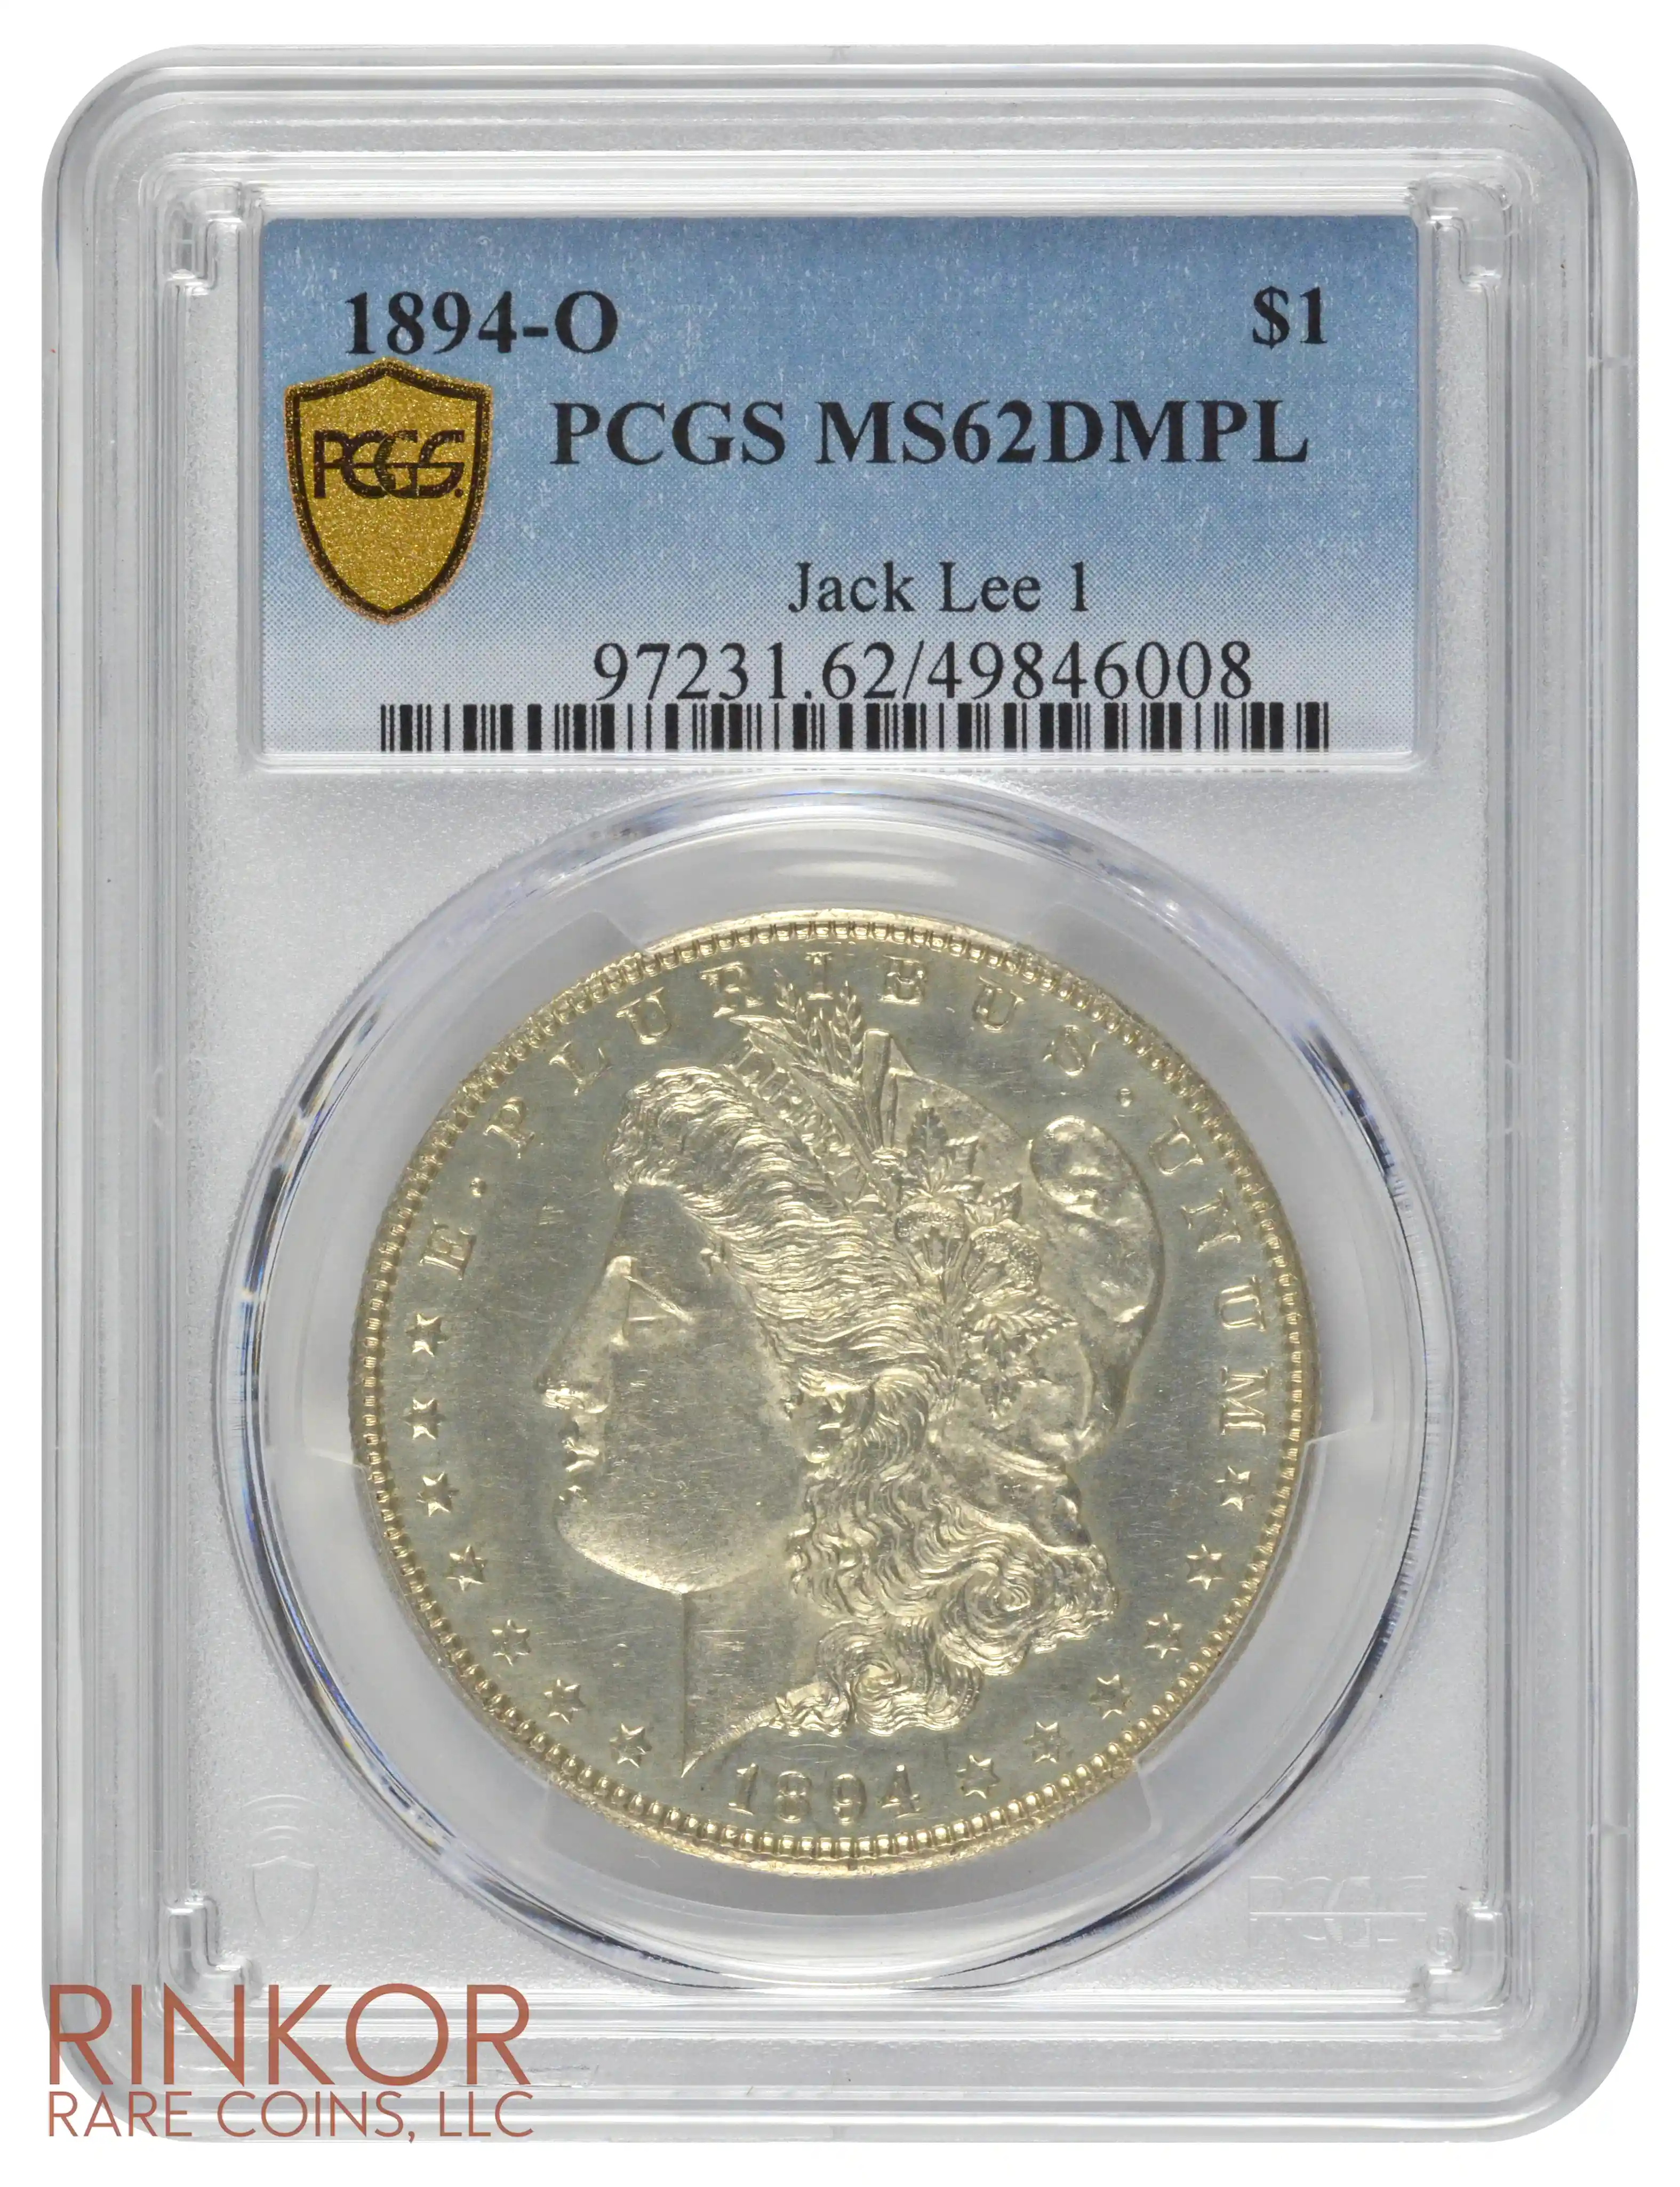 1894-O $1 PCGS MS 62 DMPL